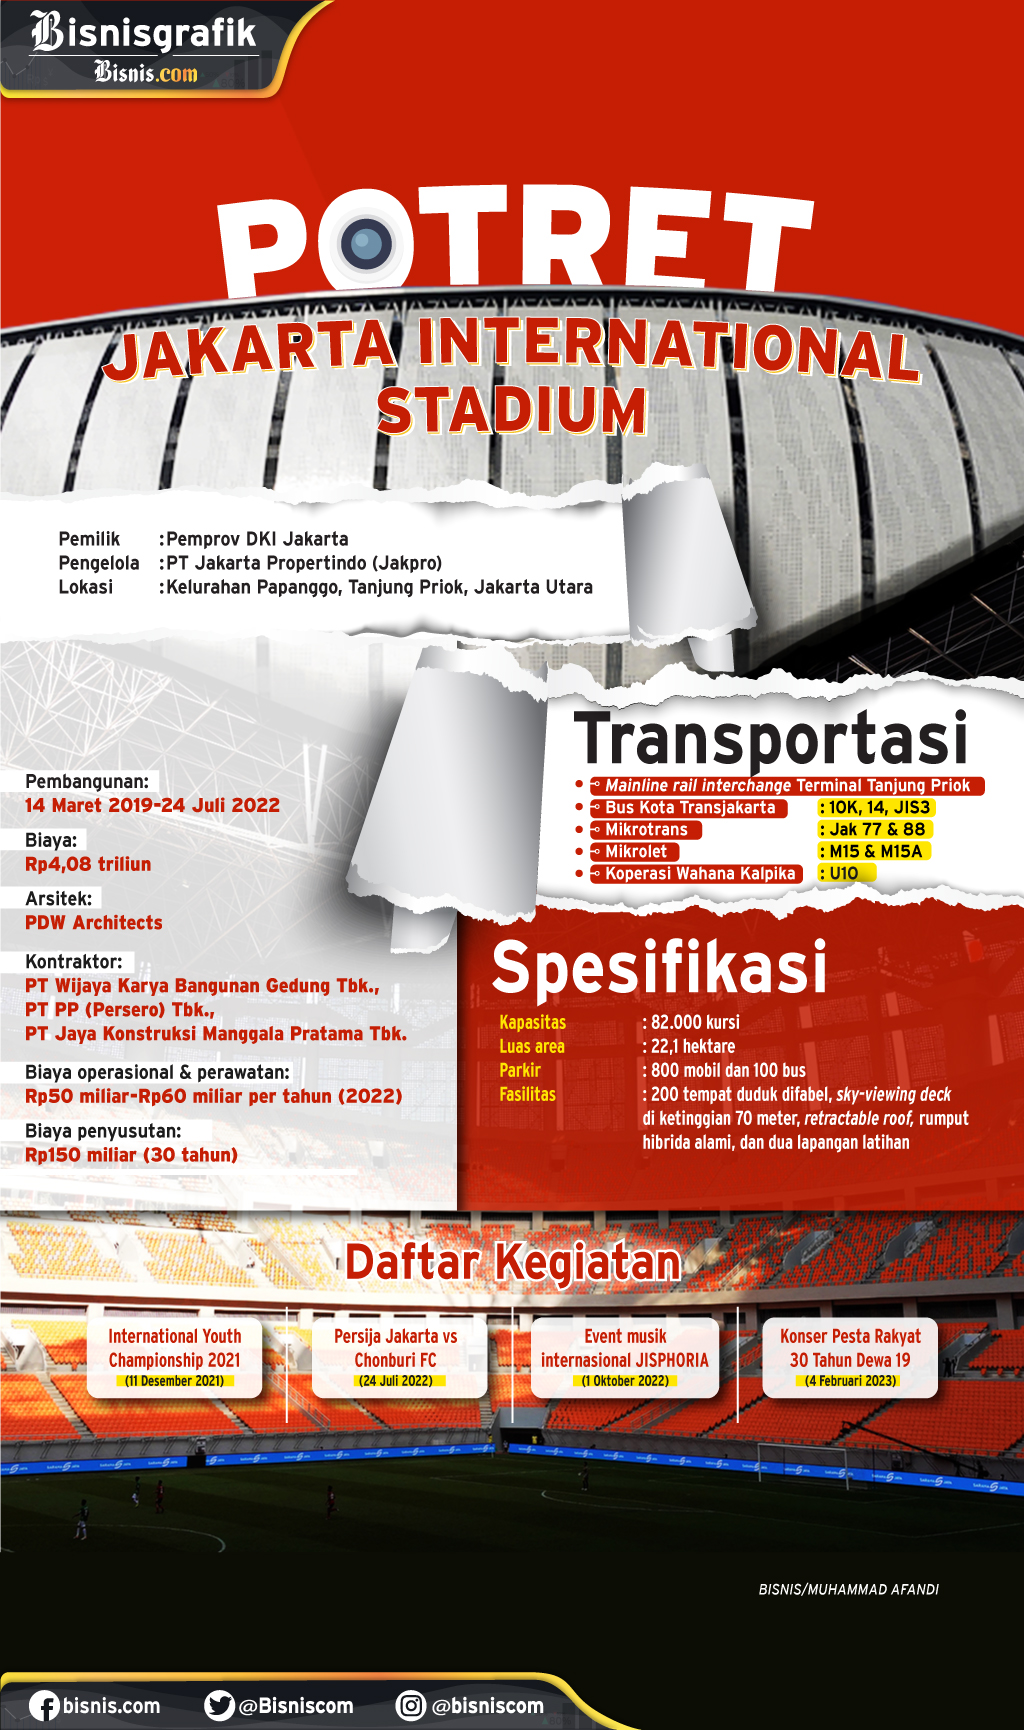 Profil Jakarta International Stadium yang baru/baru ini menjadi tempat konser musik Dewa 19 bertajuk Konser Pesta Rakyat 30 Tahun Berkarya Dewa 19.